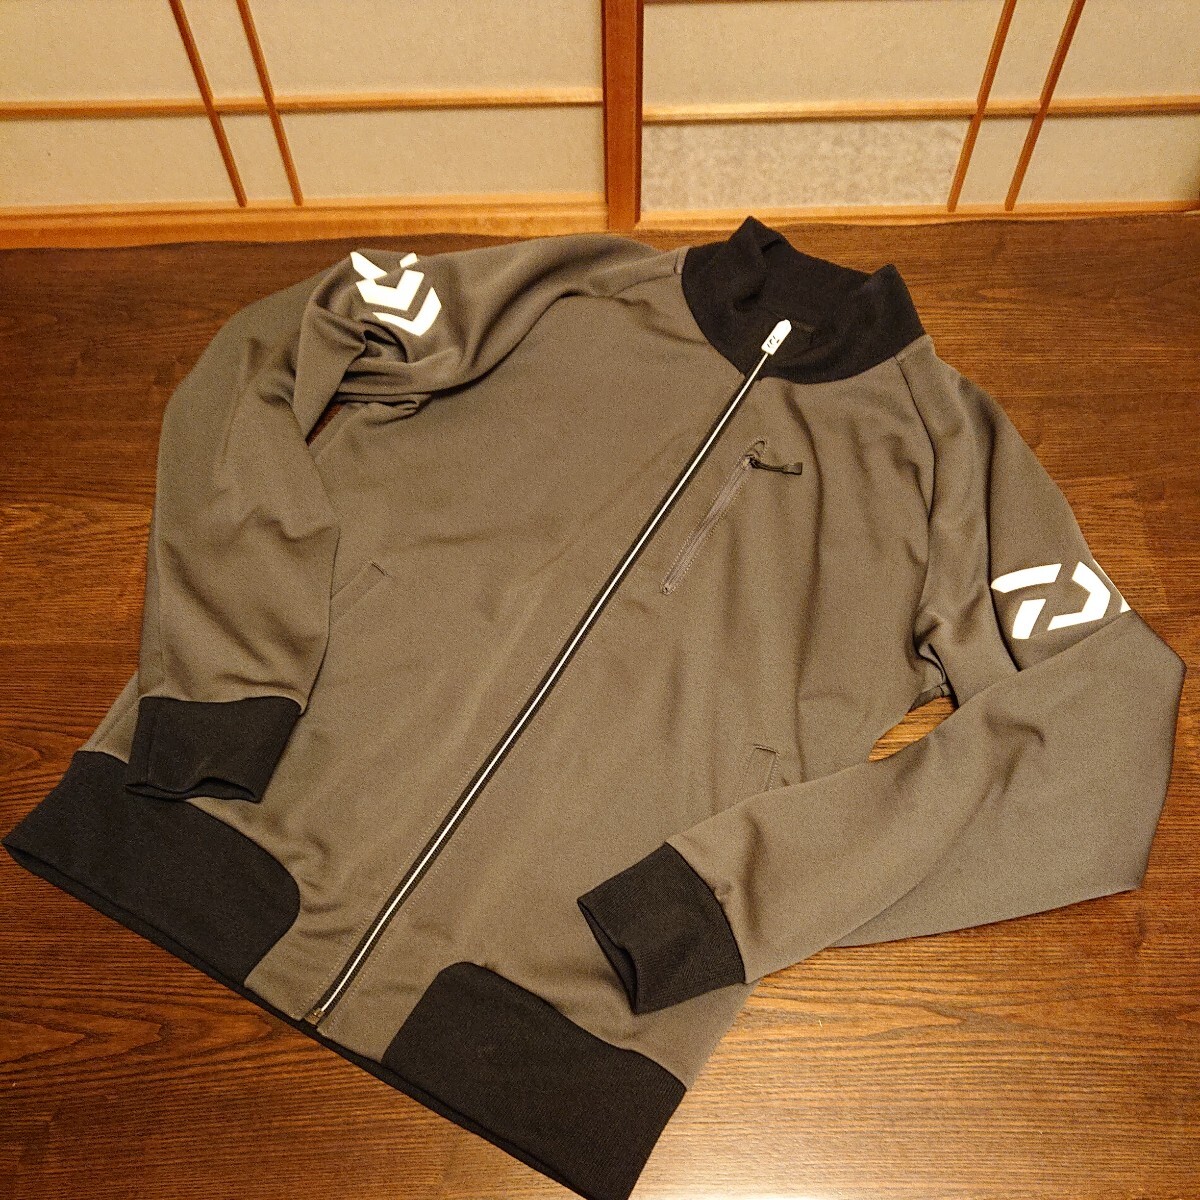 * хорошая вещь Daiwa, Daiwa . способ стрейч материалы, спортивная куртка, серый × черный, бесплатная доставка 